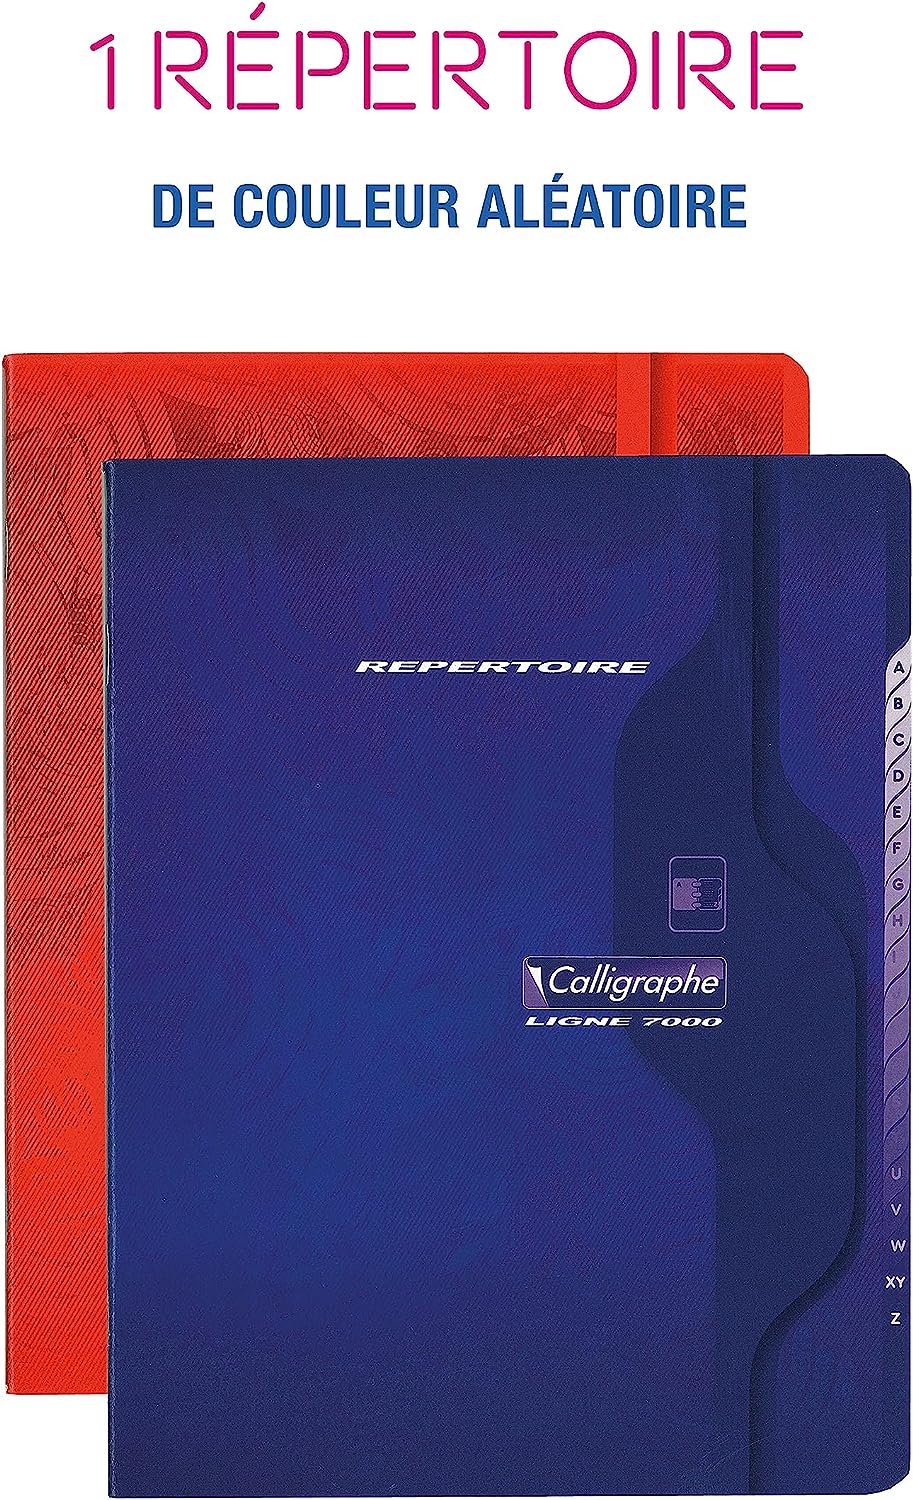 calligraphe-851c-un-repertoire-agrafe-une-marque-de-clairefontaine-17×22-cm-96-pages-petits-carreaux-papier-blanc-70-g-couverture-carte-recyclee-2